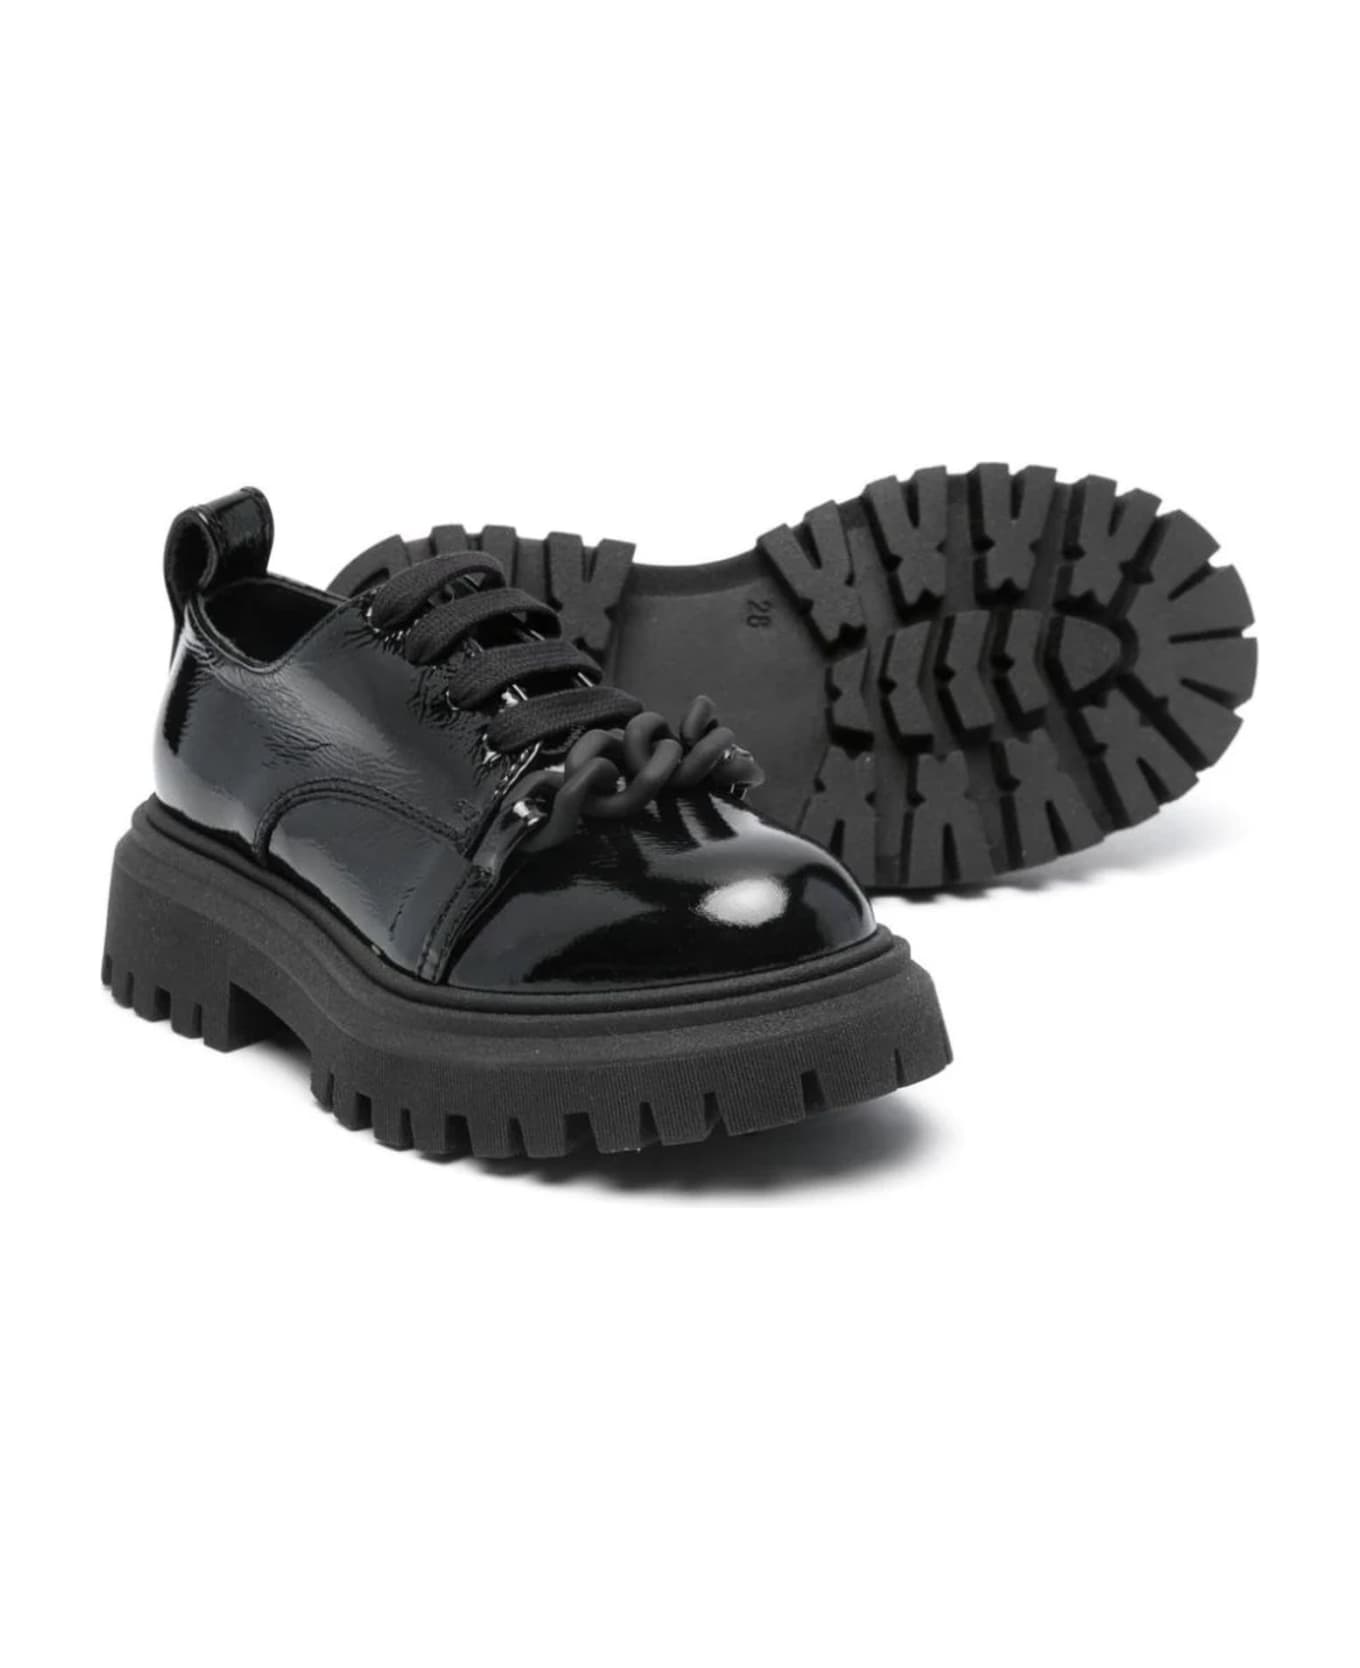 N.21 N°21 Flat Shoes Black - Black